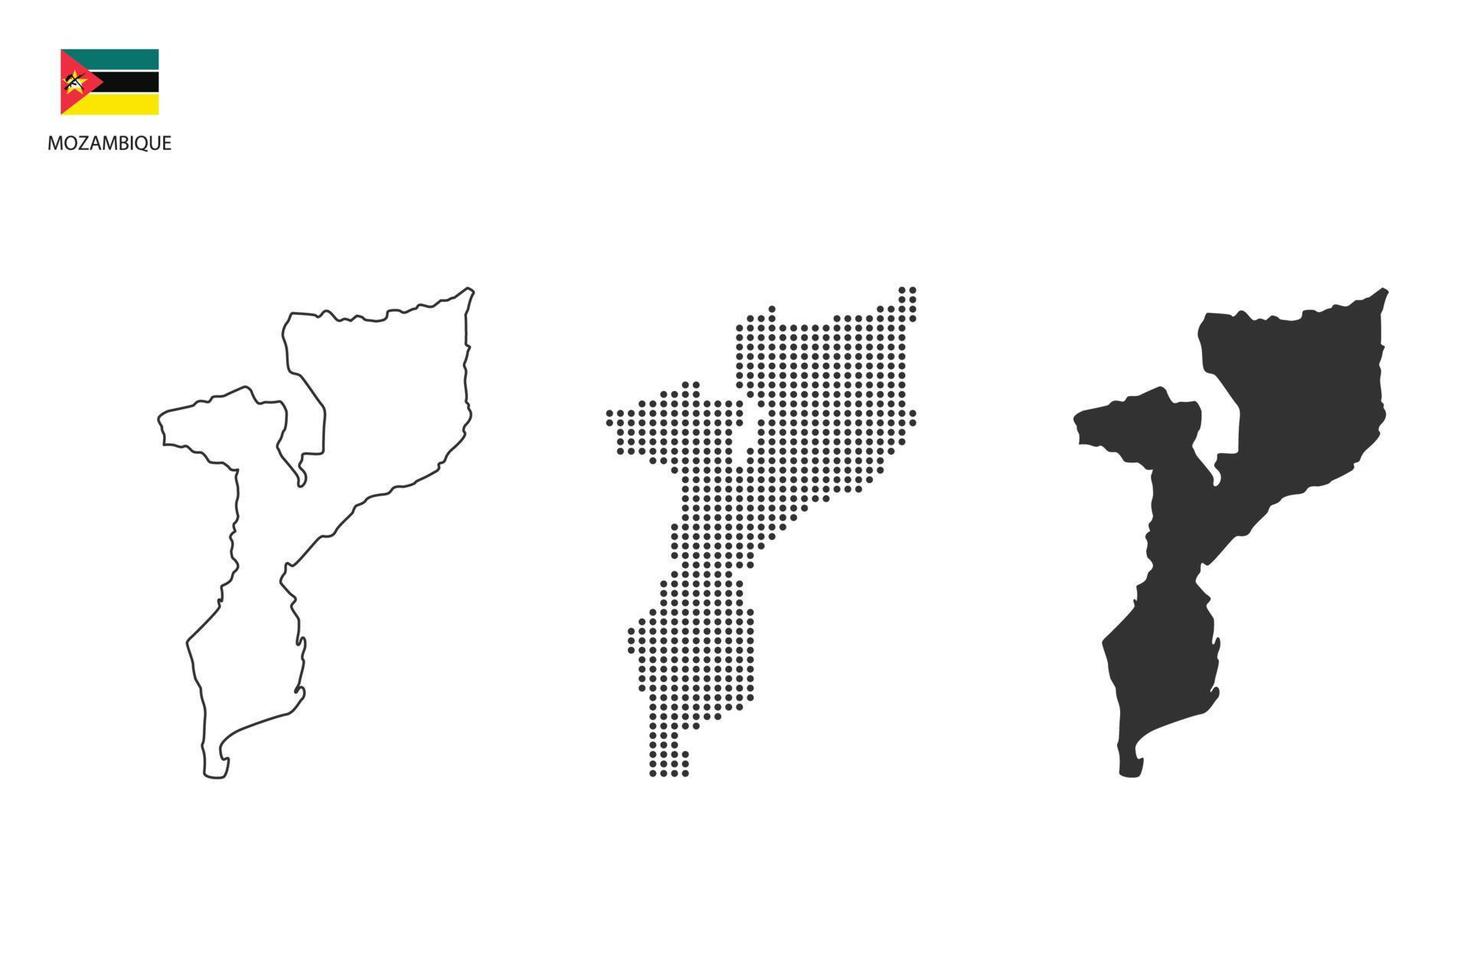 3 versiones del vector de la ciudad del mapa de mozambique por estilo de simplicidad de contorno negro delgado, estilo de punto negro y estilo de sombra oscura. todo en el fondo blanco.